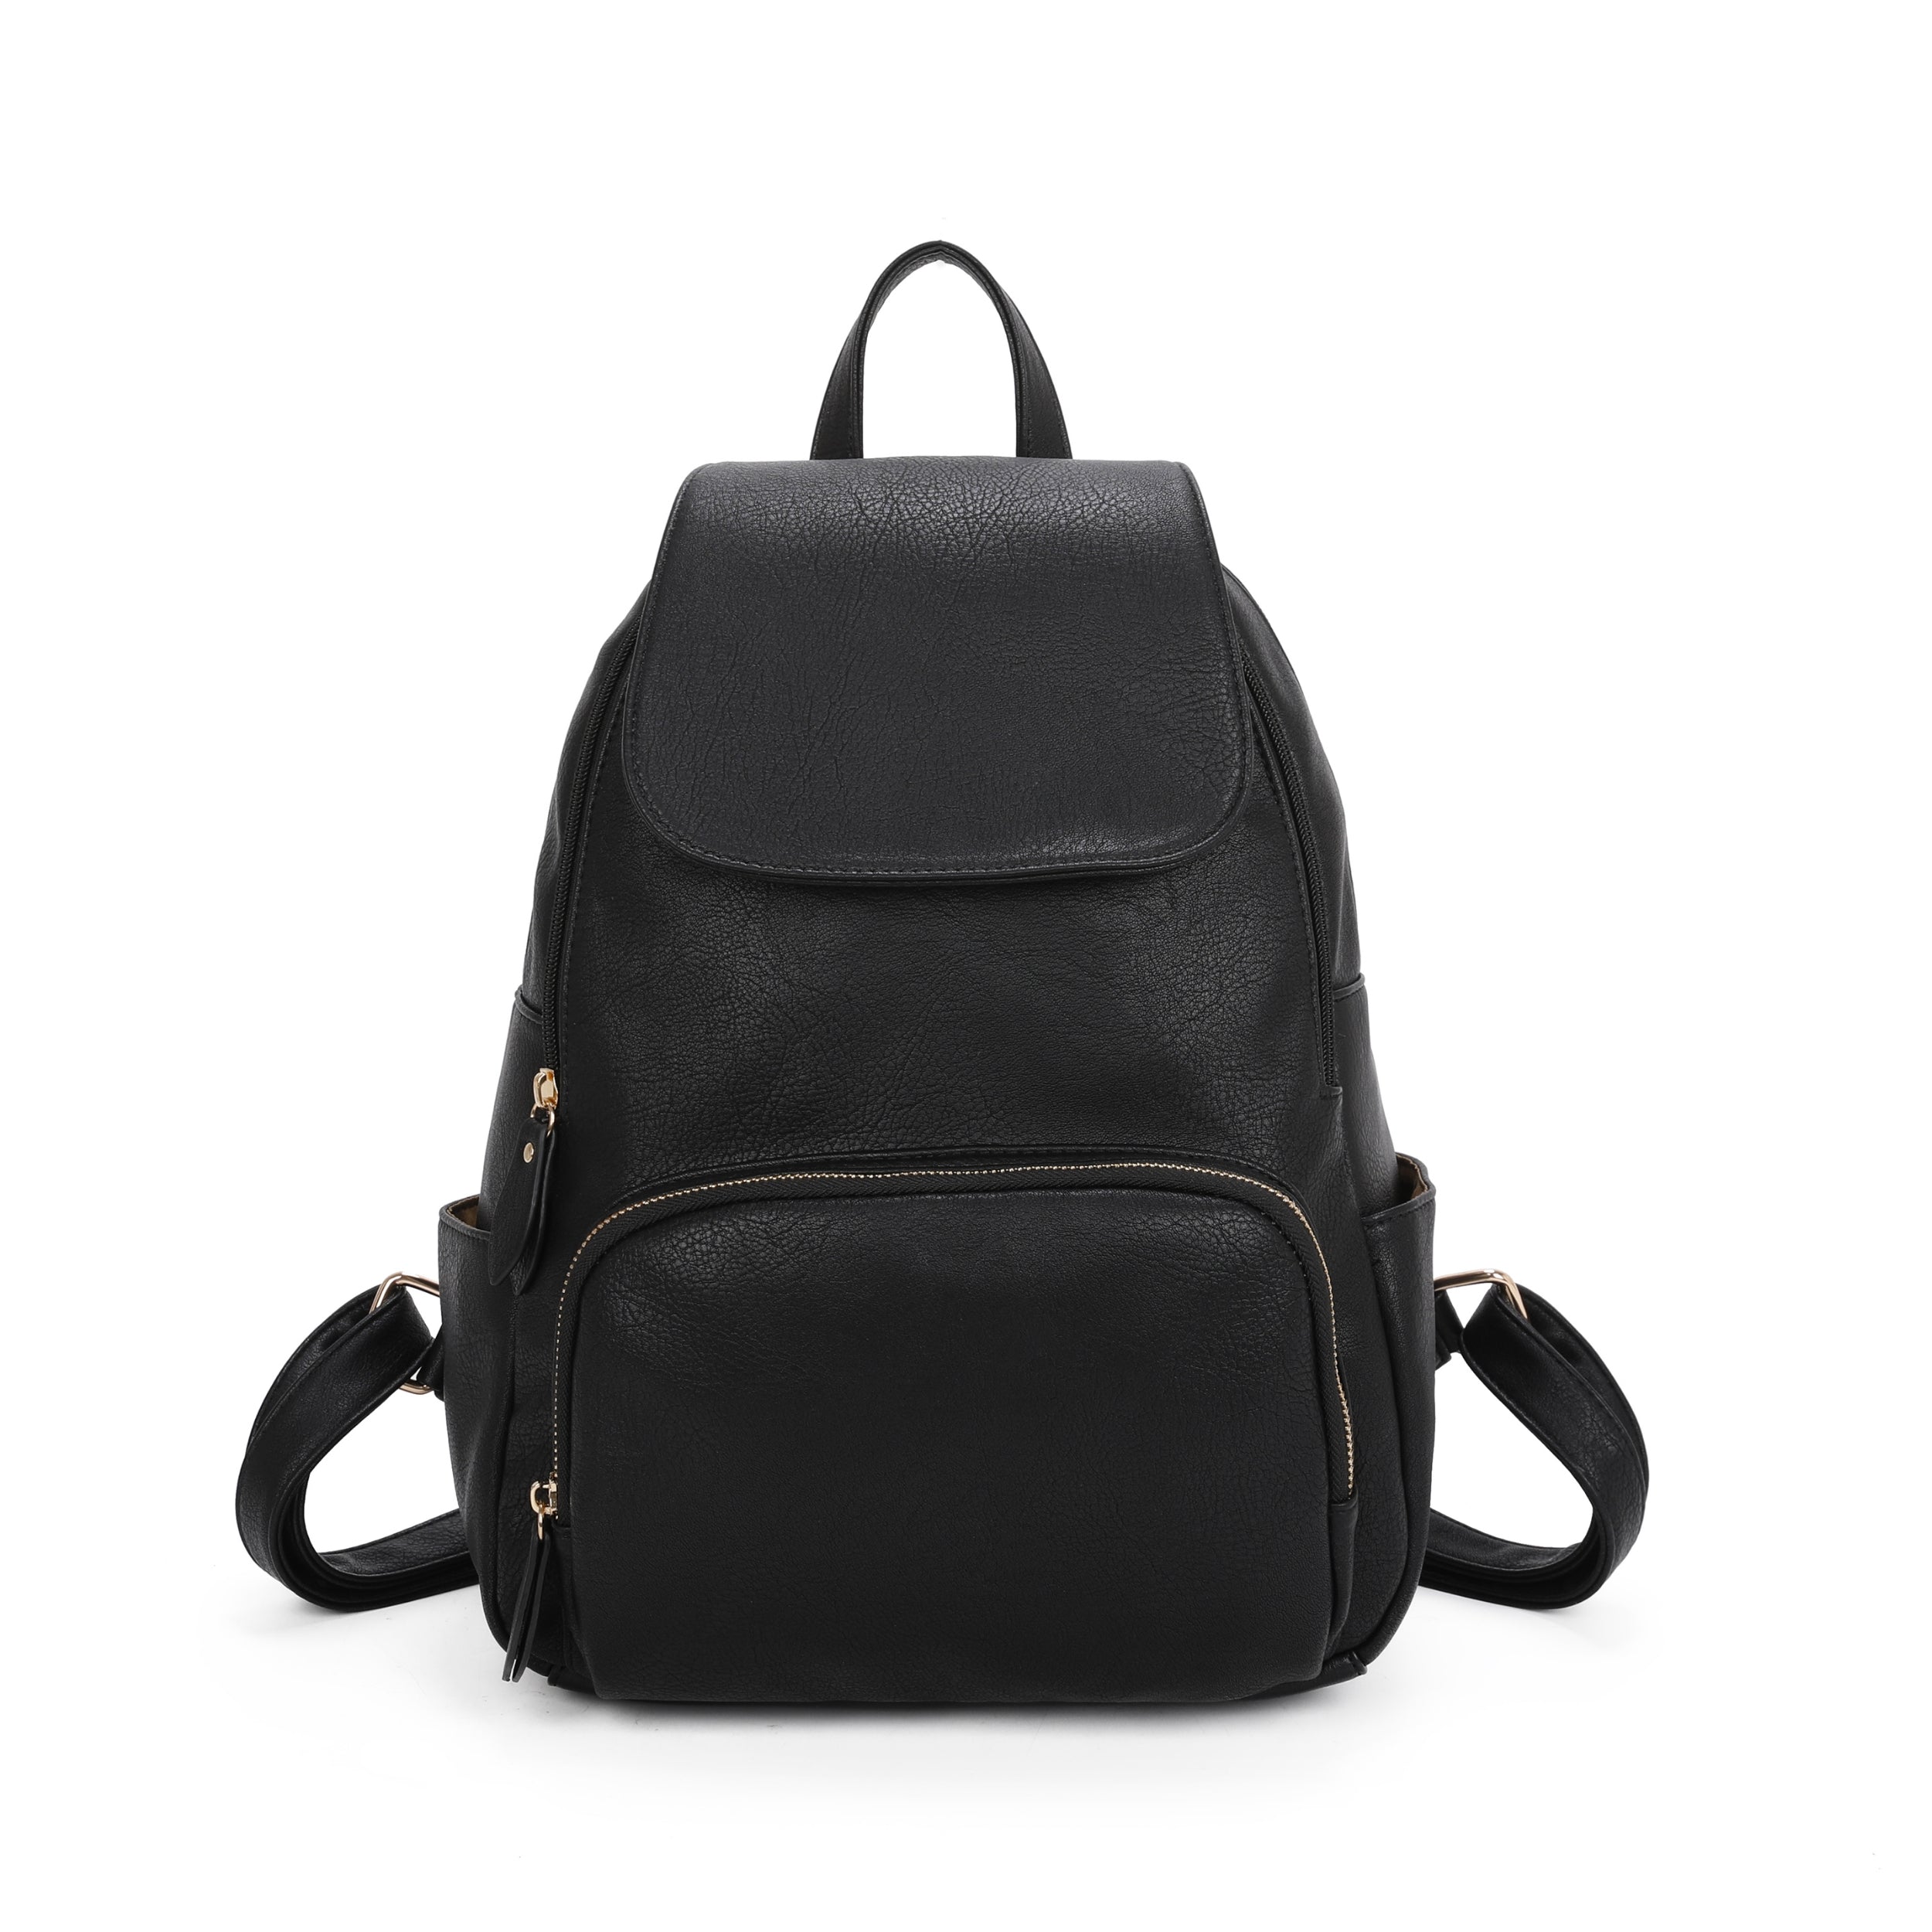 Craze London Adjustable shoulder straps  backpack